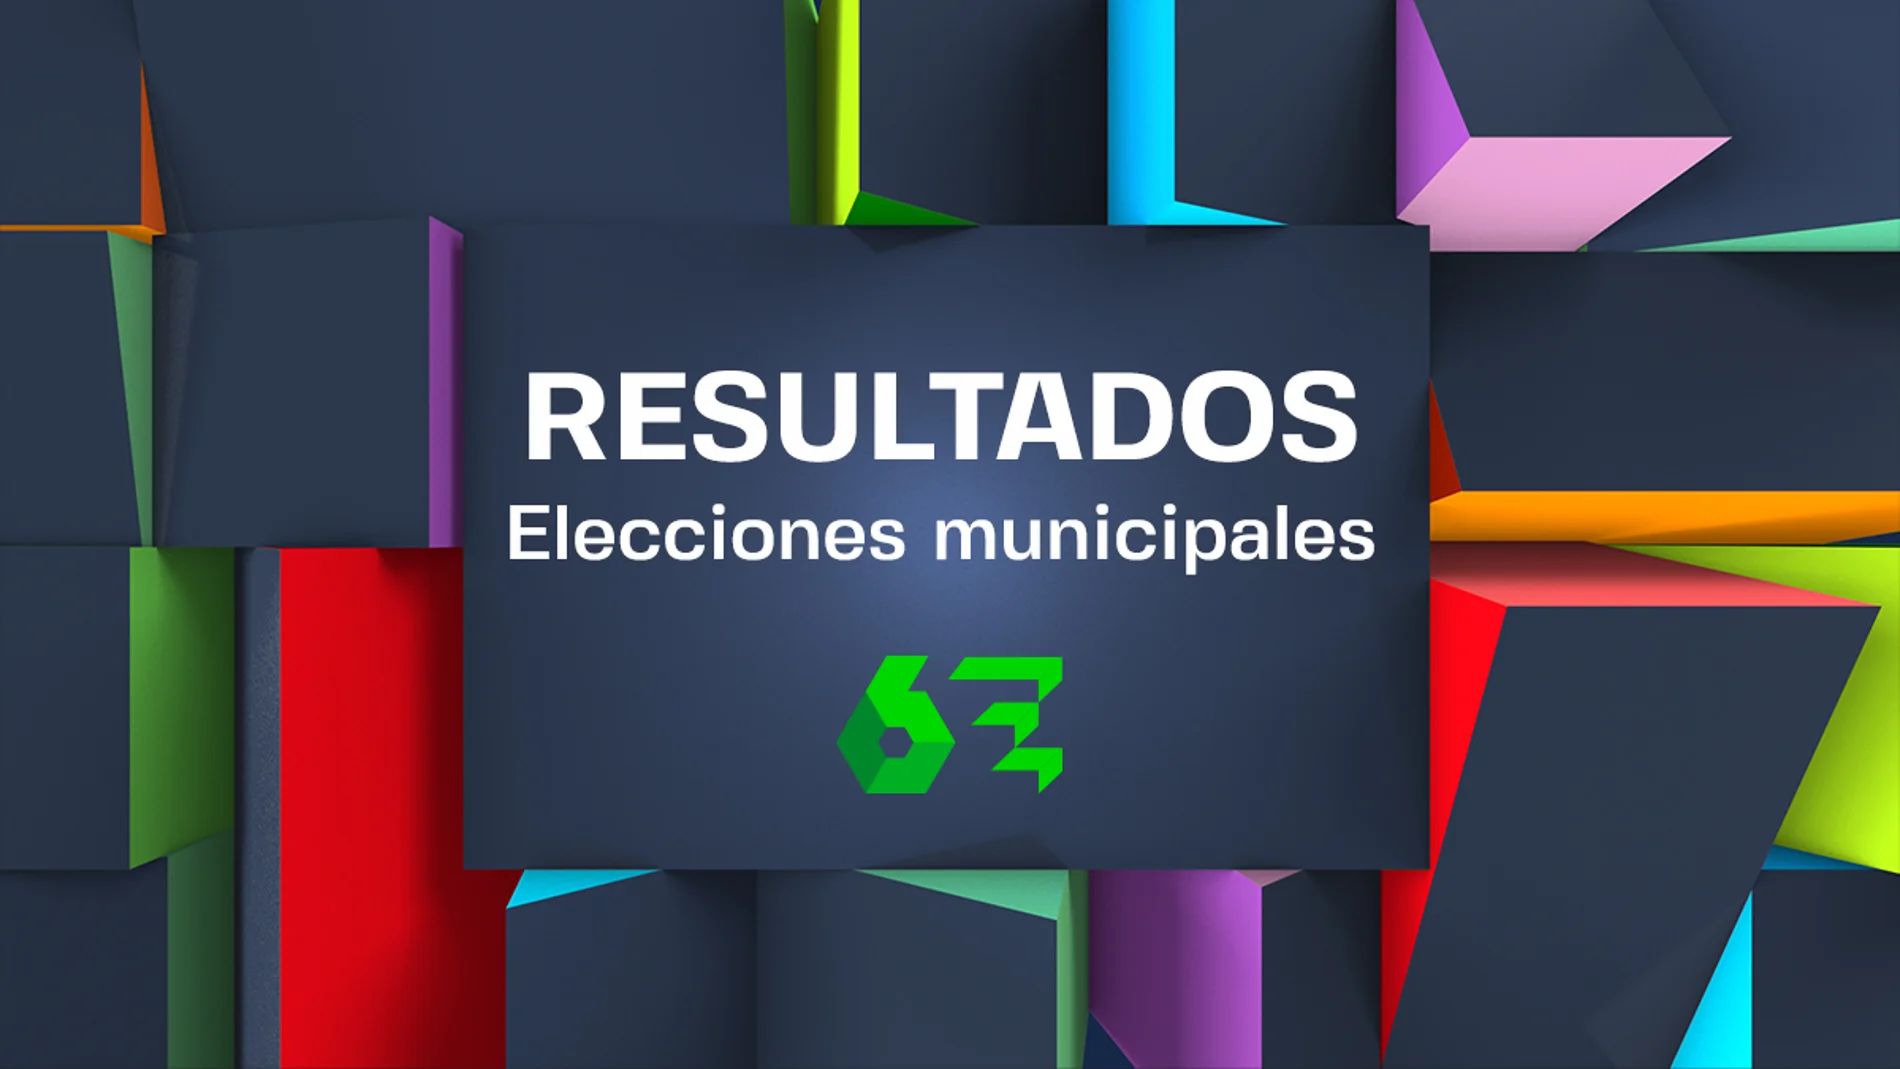 ¿Quién ha ganado las elecciones municipales? Consulta todos los resultados en laSexta